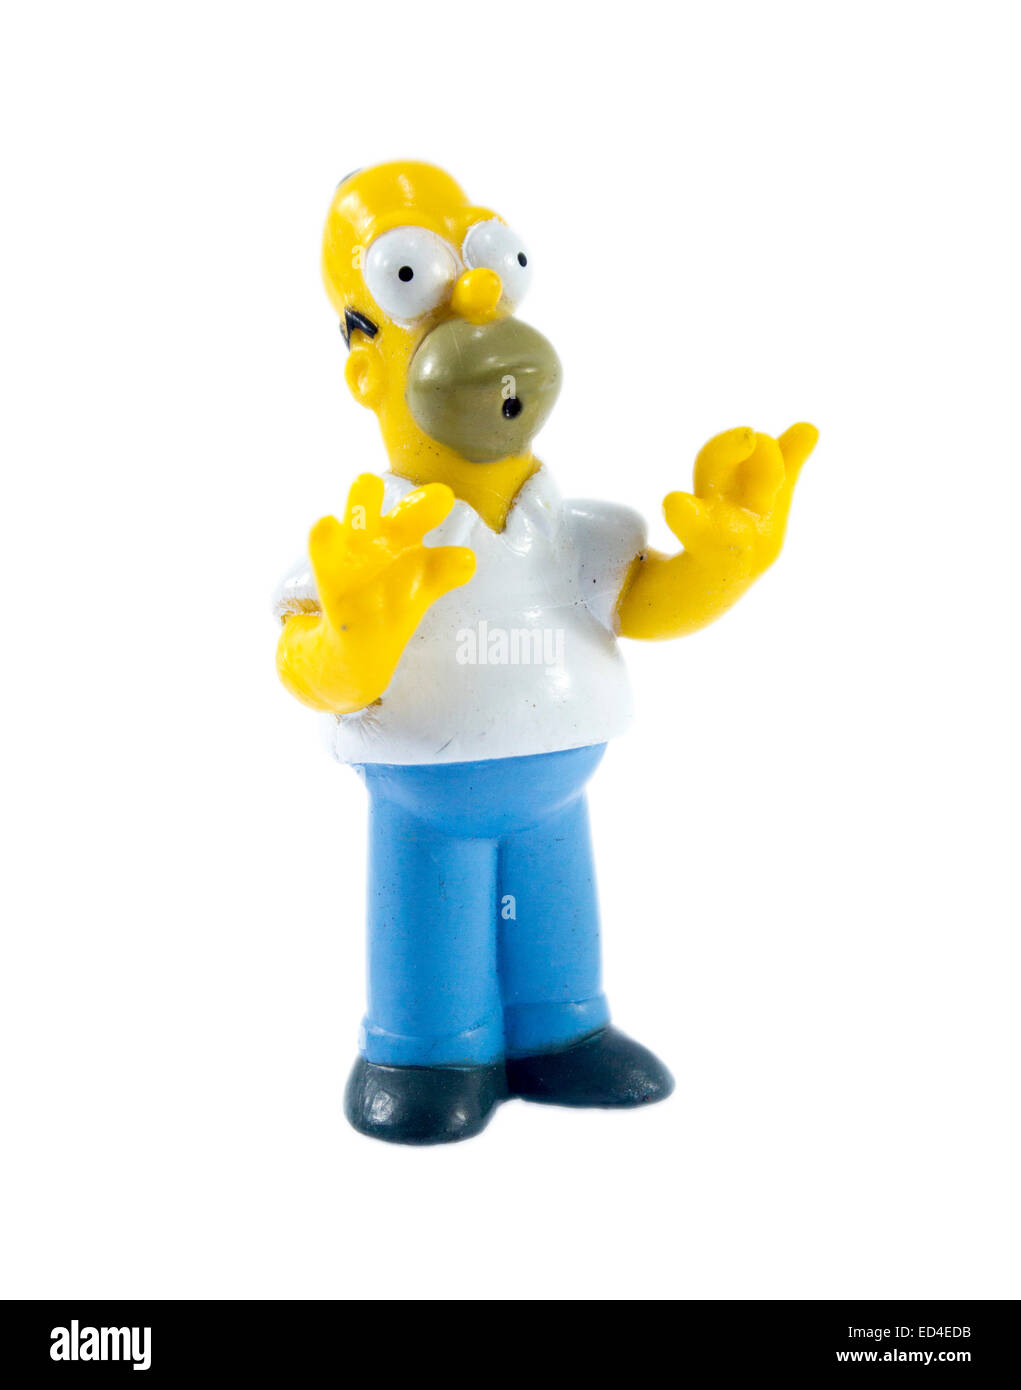 Amman, Jordanie - 1 novembre, 2014 : Homer Simpson figure toy personnage de la famille Simpsons. Les Simpsons est un Américain ani Banque D'Images